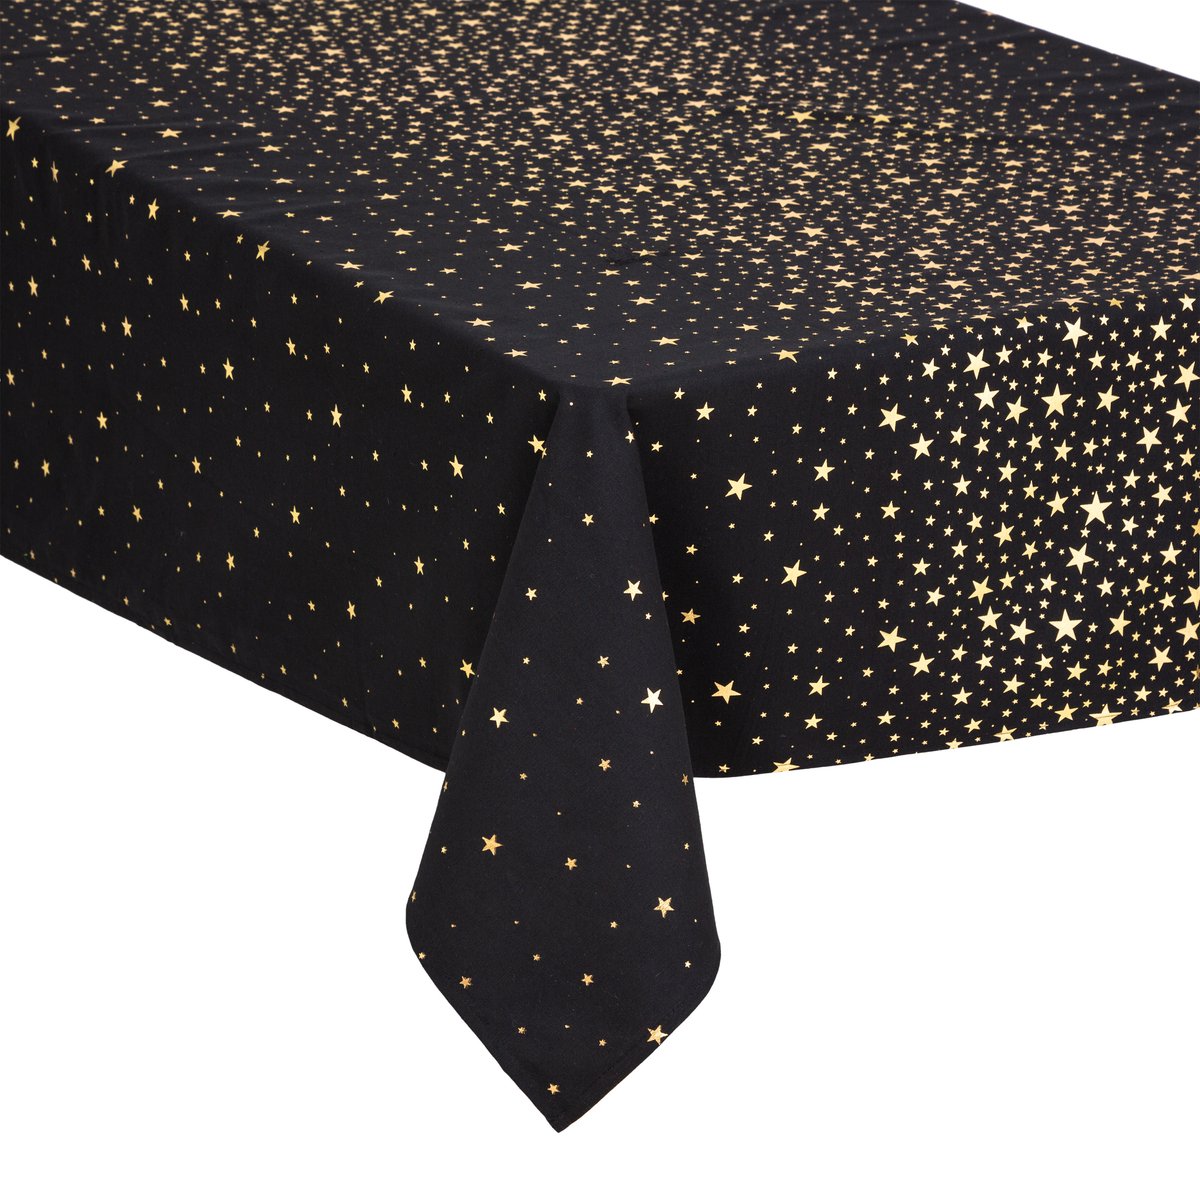 DELUXE tafelkleed kerst katoen - Zwart met gouden of zilveren sterren - 140 x 240 cm - Katoen - Kersttafelkleed